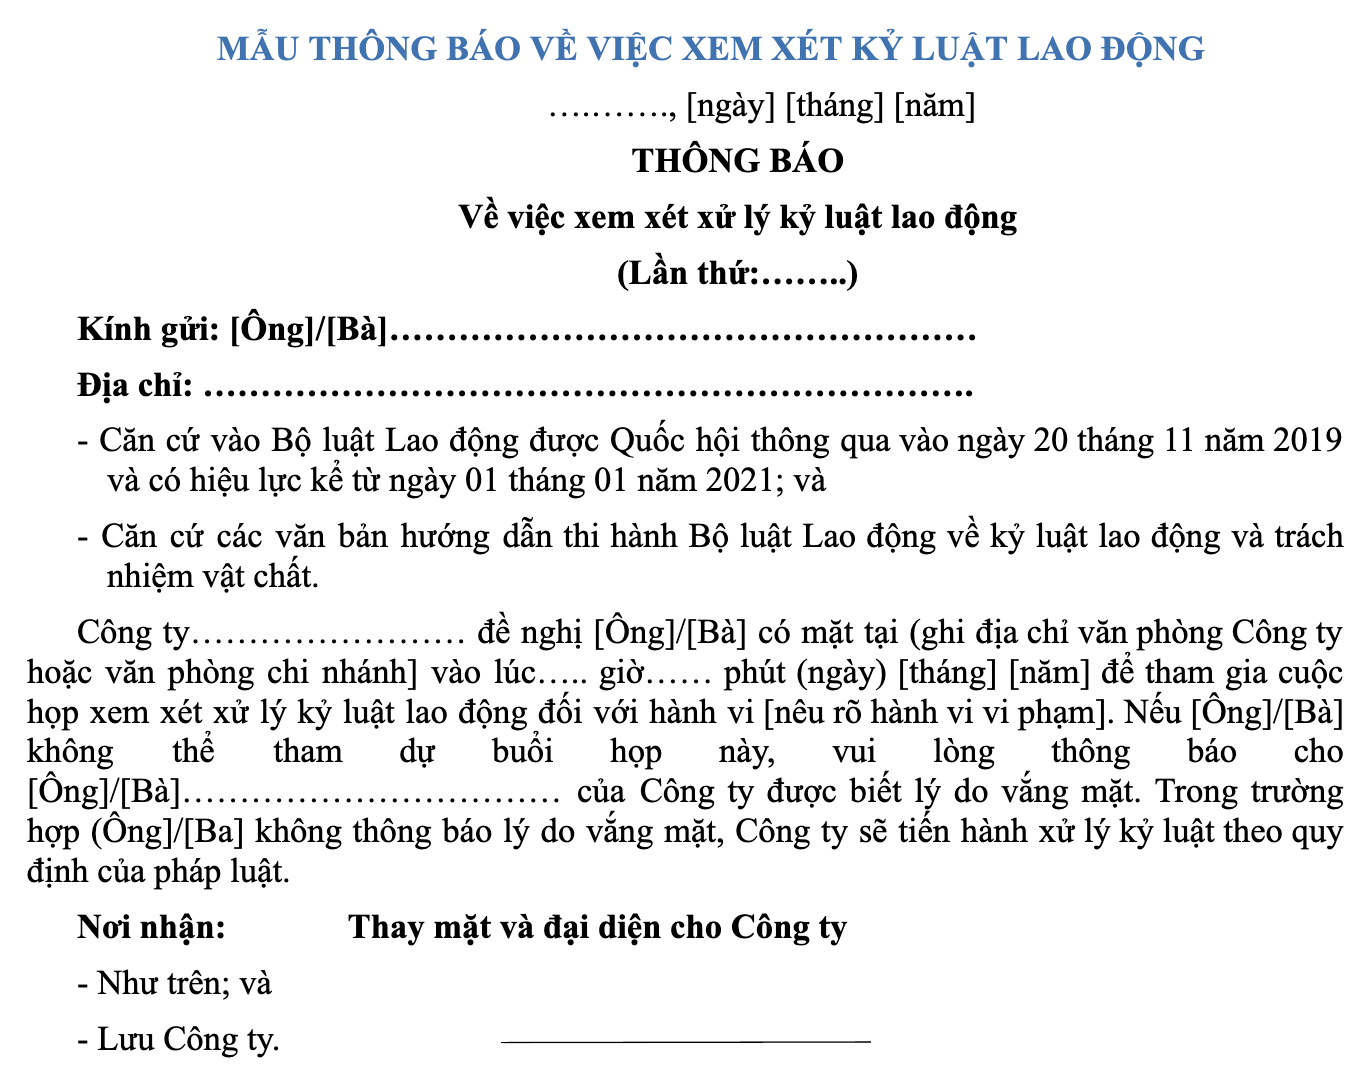 mau-thong-bao-ve-viec-xem-xet-ky-luat-lao-dong